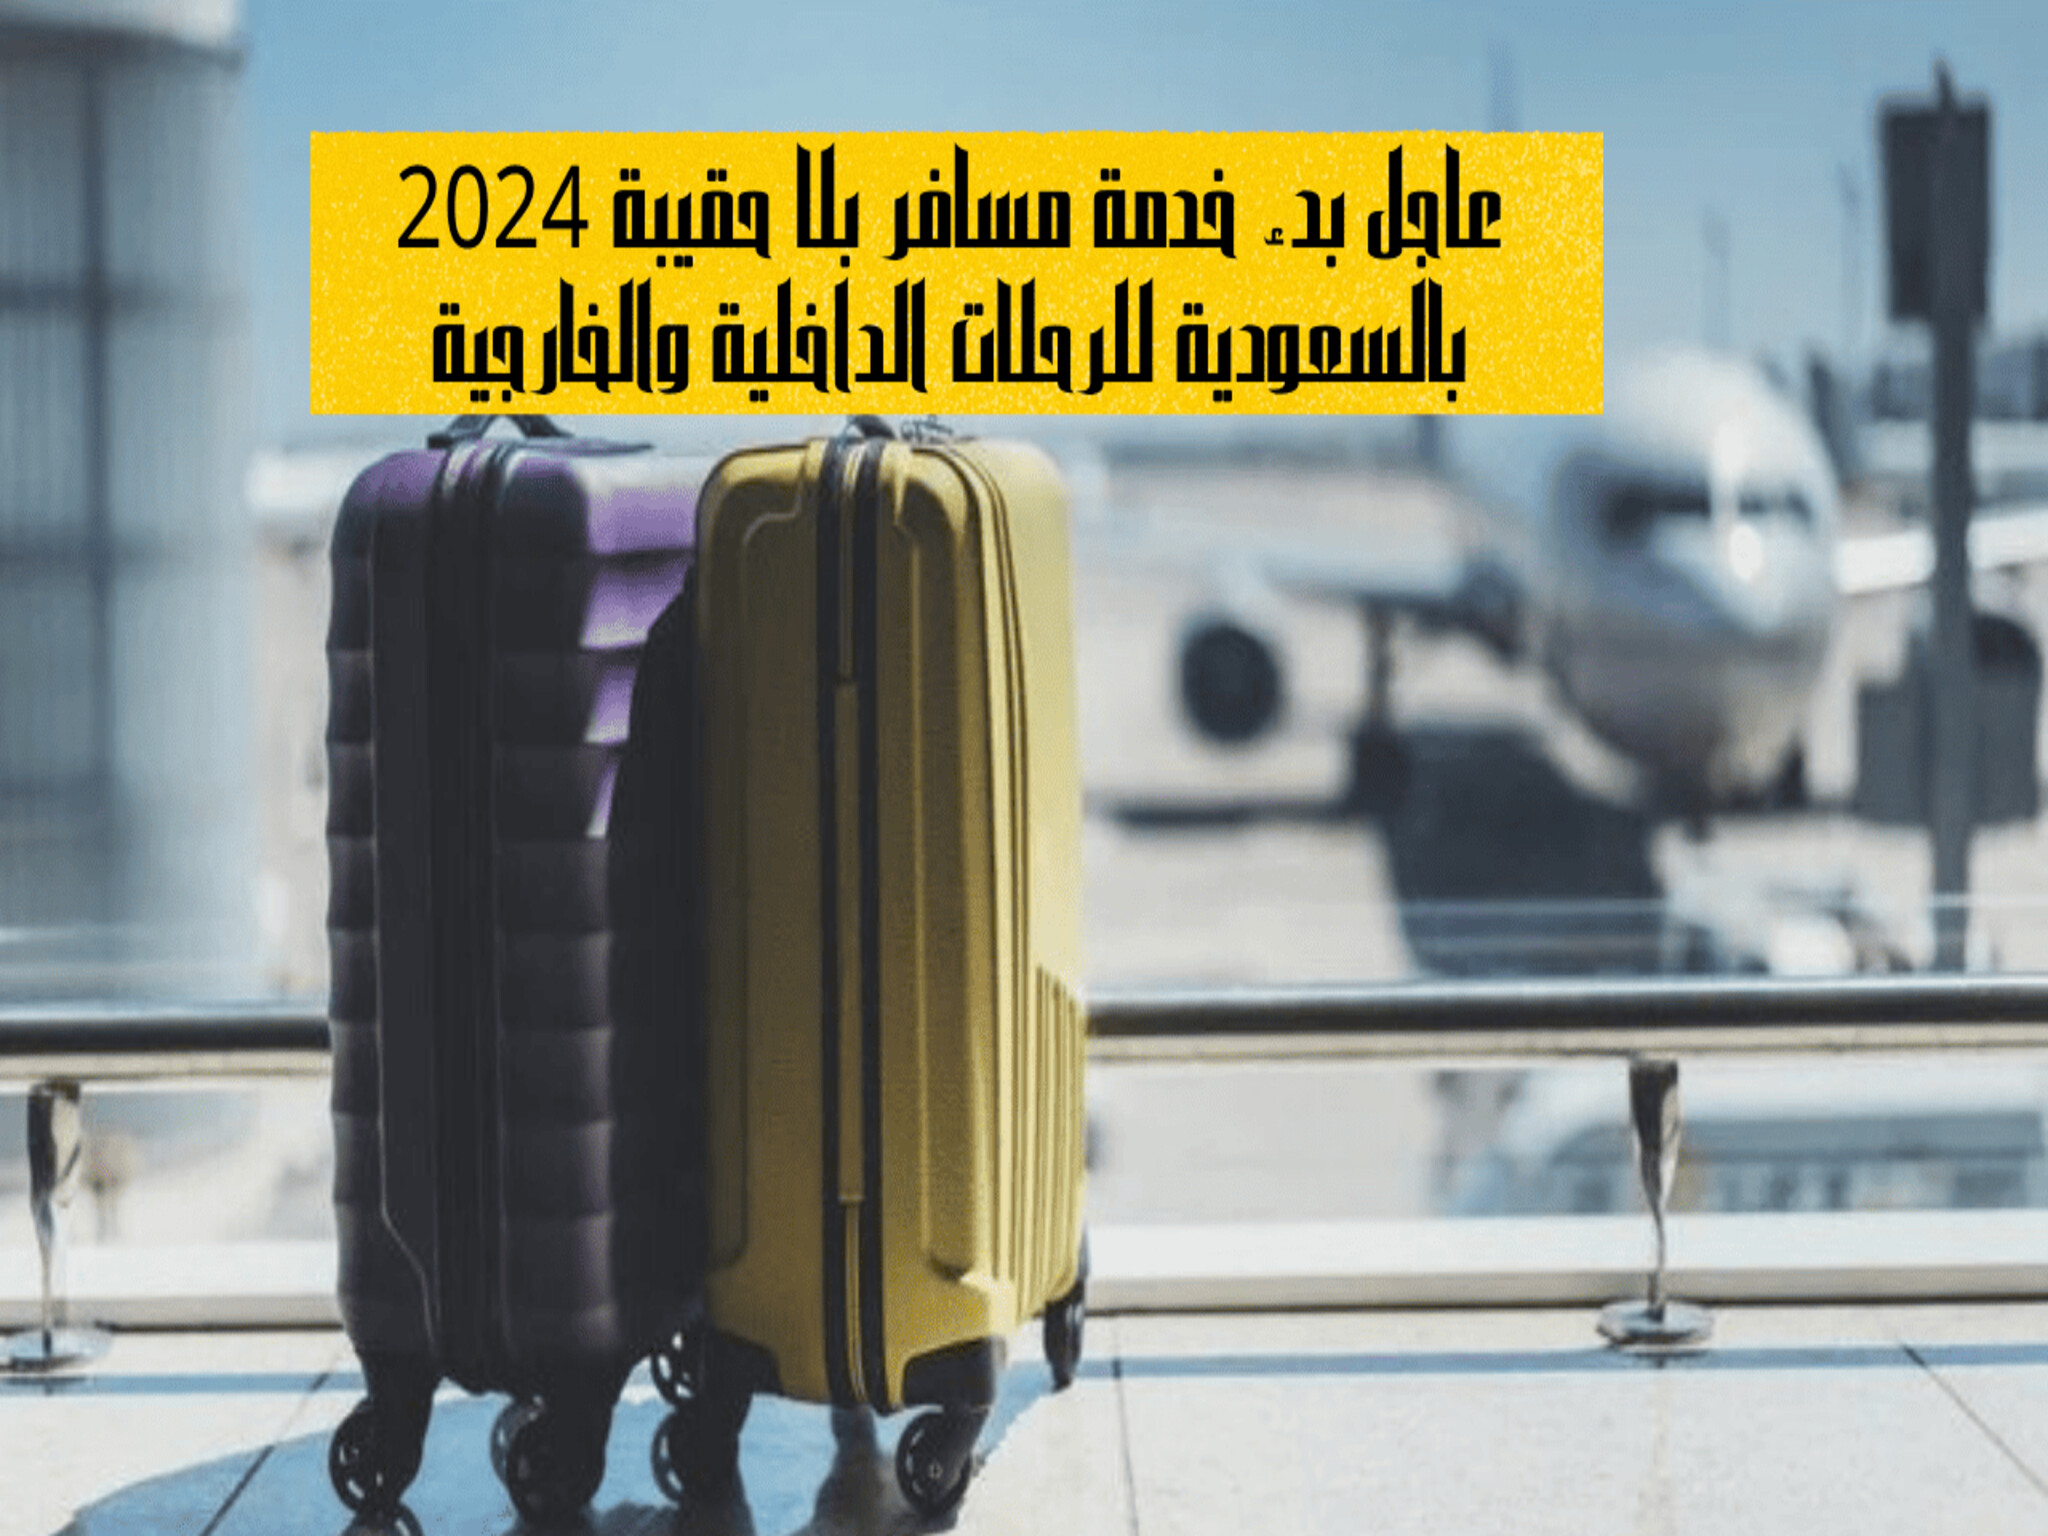 عاجل...بدء خدمة مسافر بلا حقيبة 2024 بالسعودية للرحلات الخارجية والداخلية